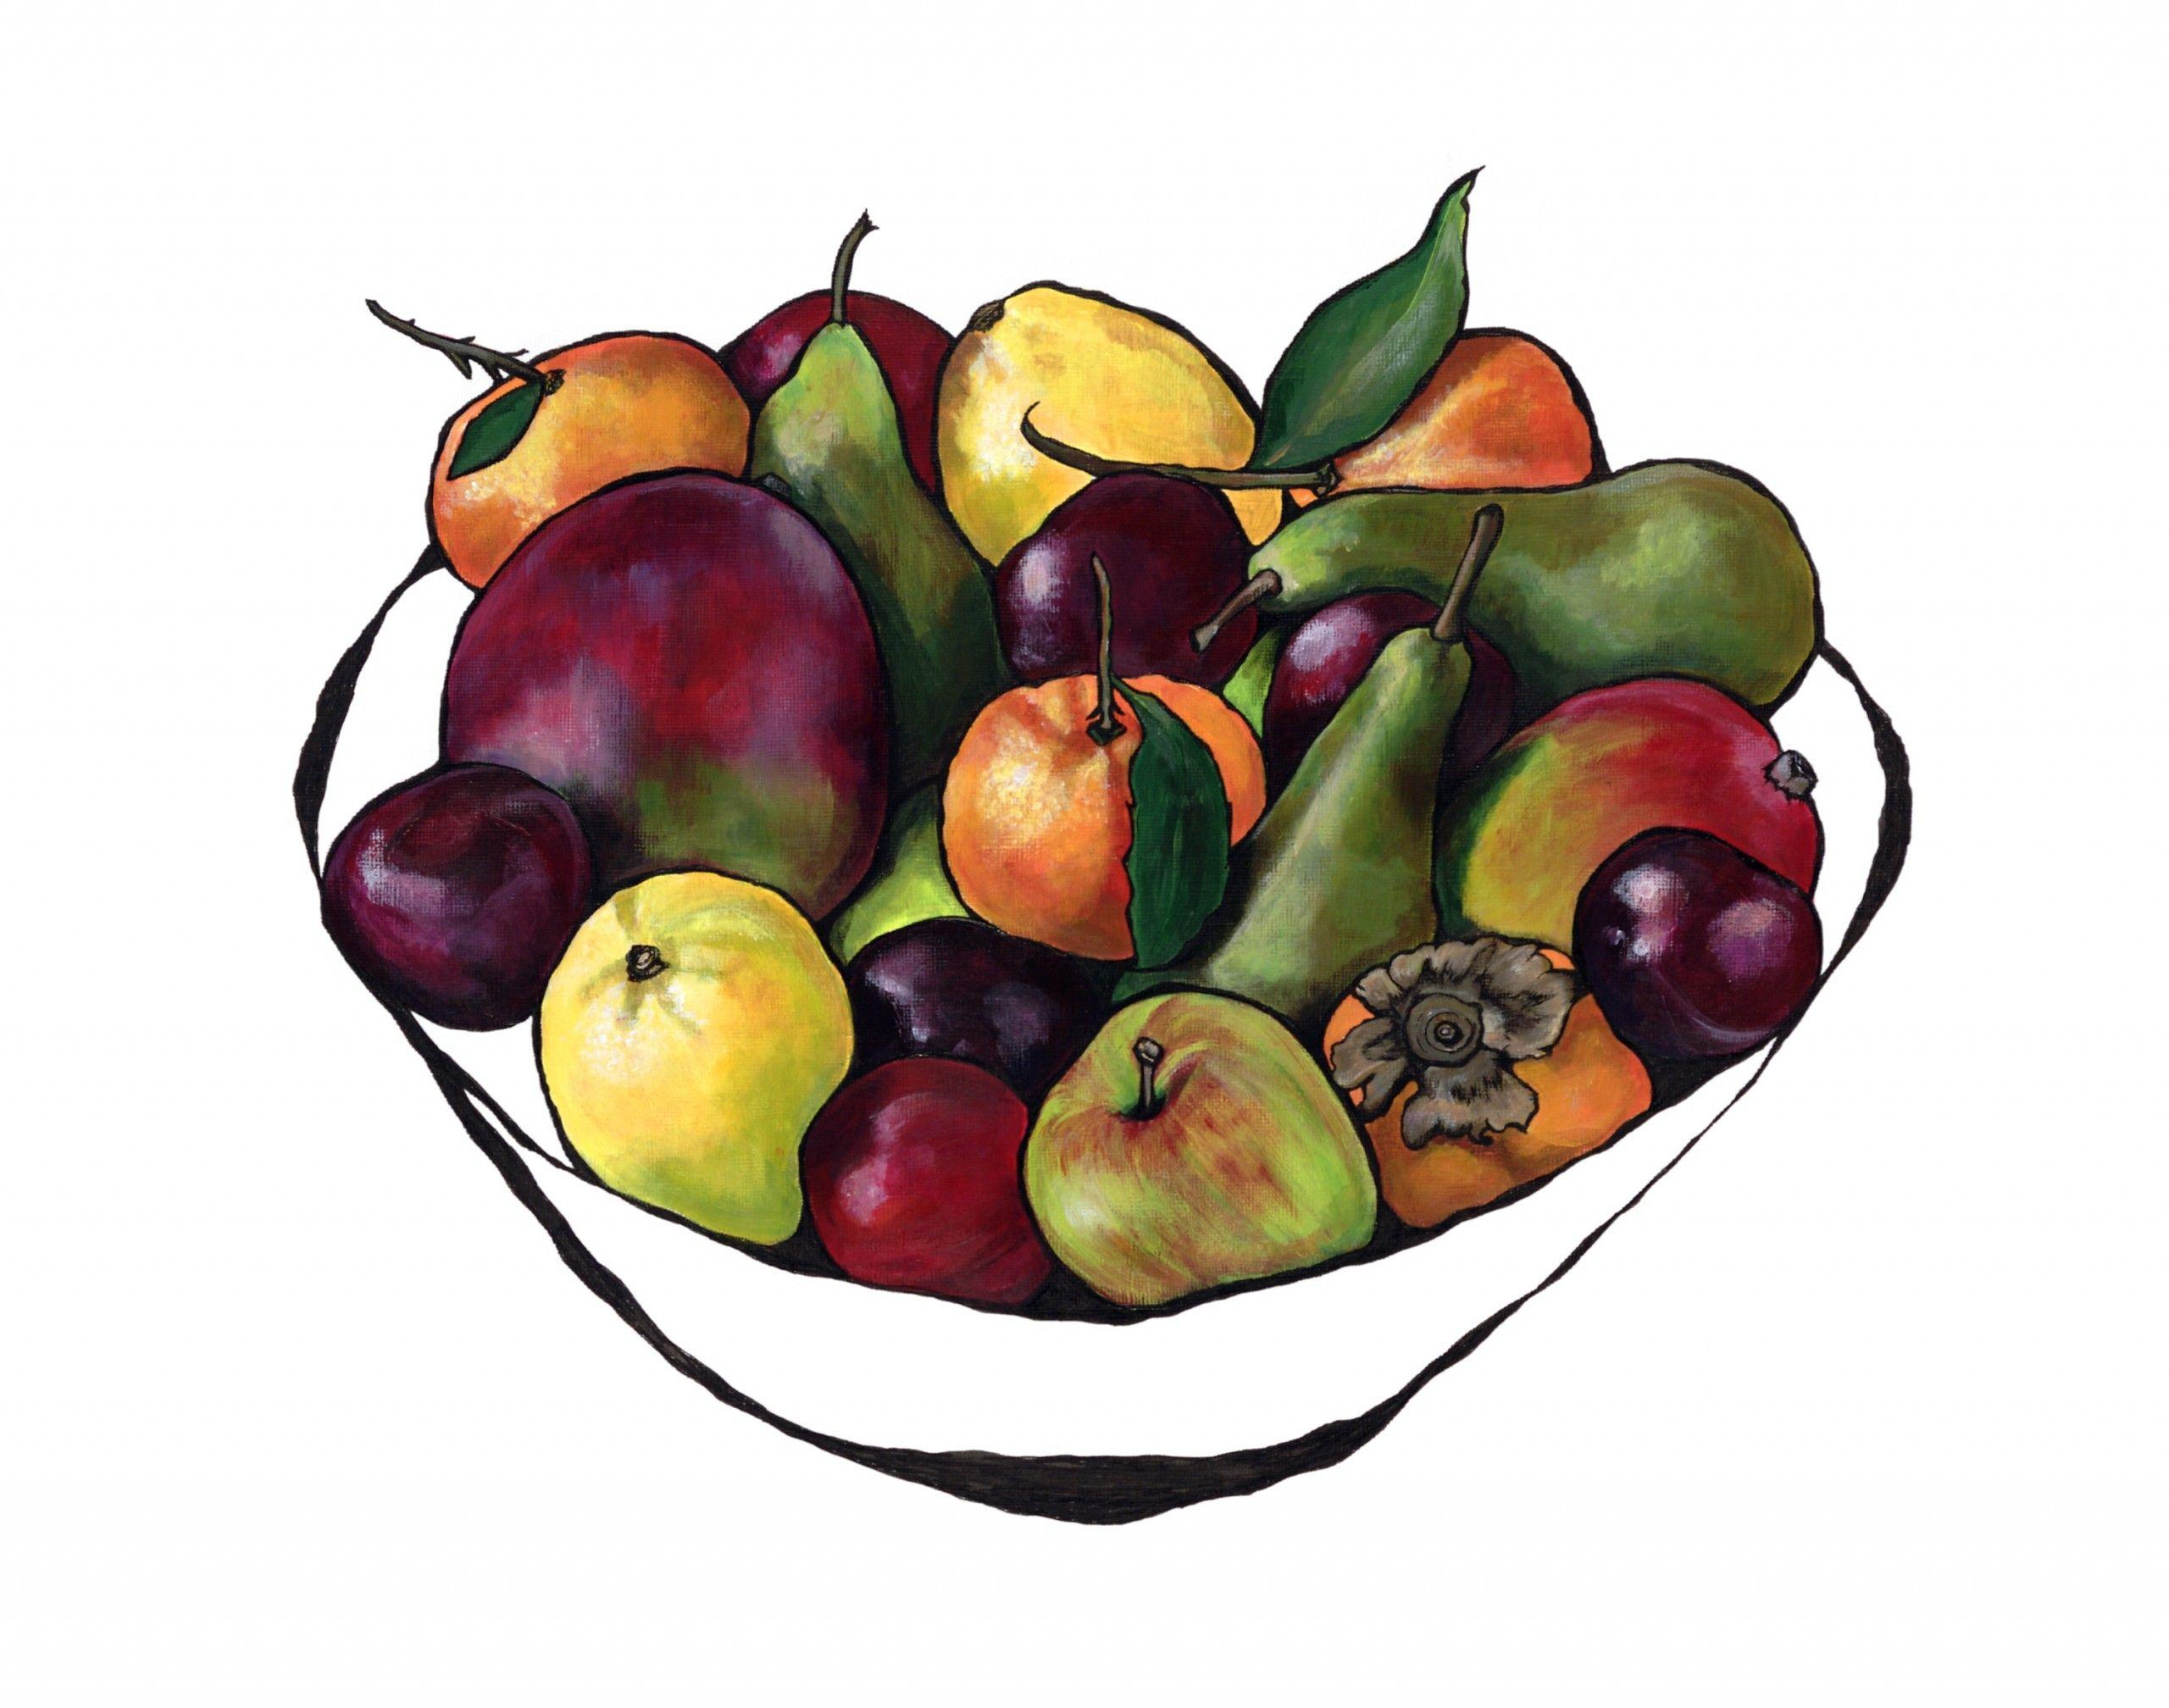 Abundance of Colour, Giclée-Druck in limitierter Auflage, Lebensmittelkunst, Obst, Kräftige Farben